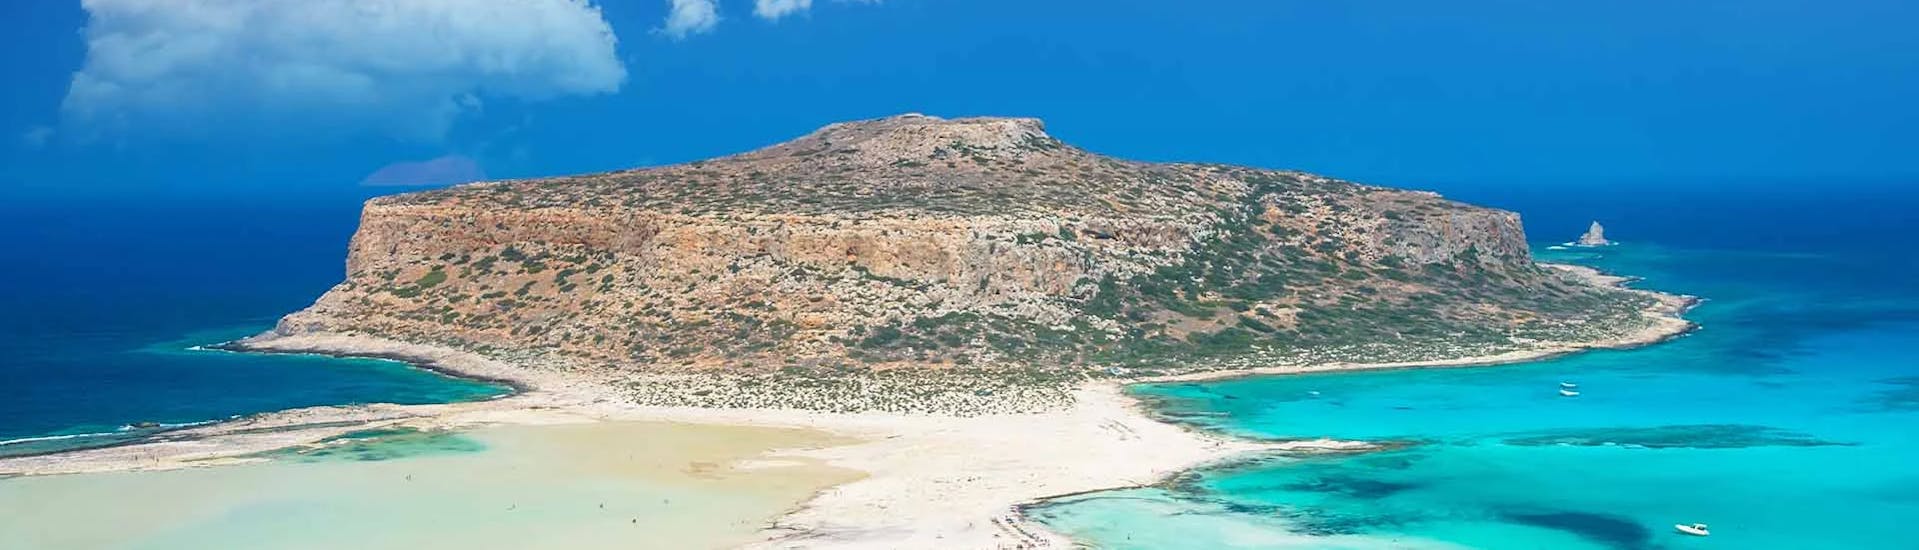 L'isola di Gramvousa che potrete visitare durante il Giro in barca privata da Falasarna alla Laguna di Balos e Gramvousa.